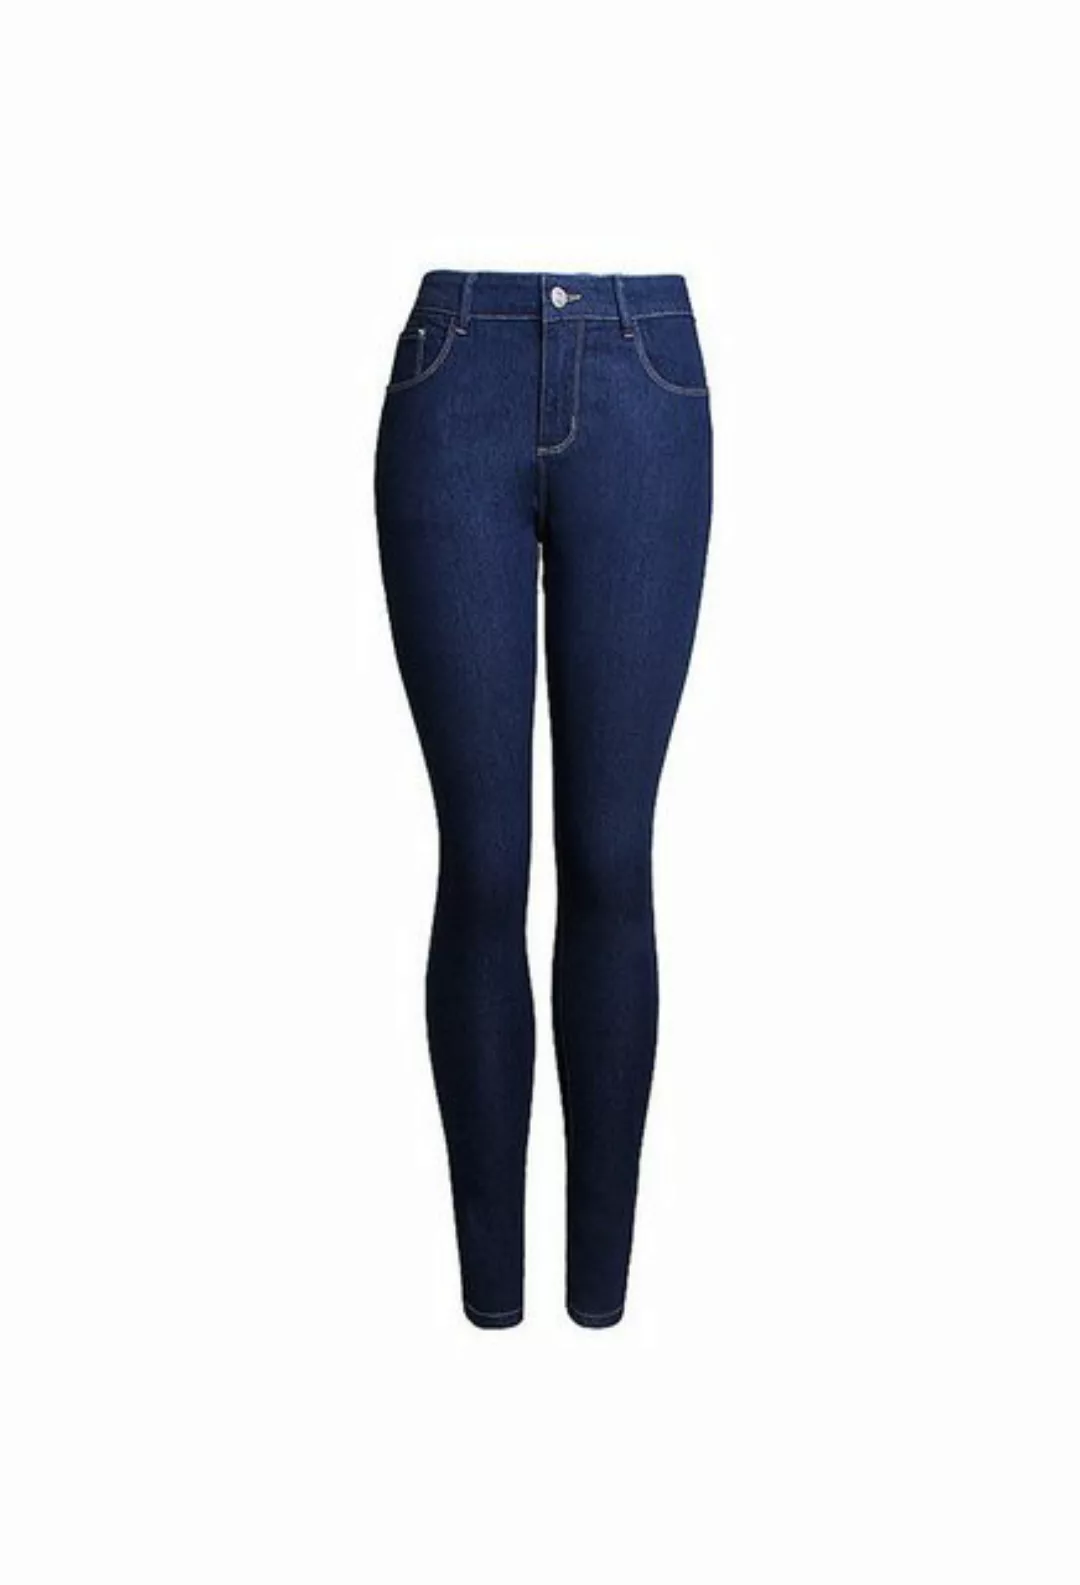 CHENIN Ankle-Jeans Schlankmachende jeanshose mit hoher taille und knöchella günstig online kaufen